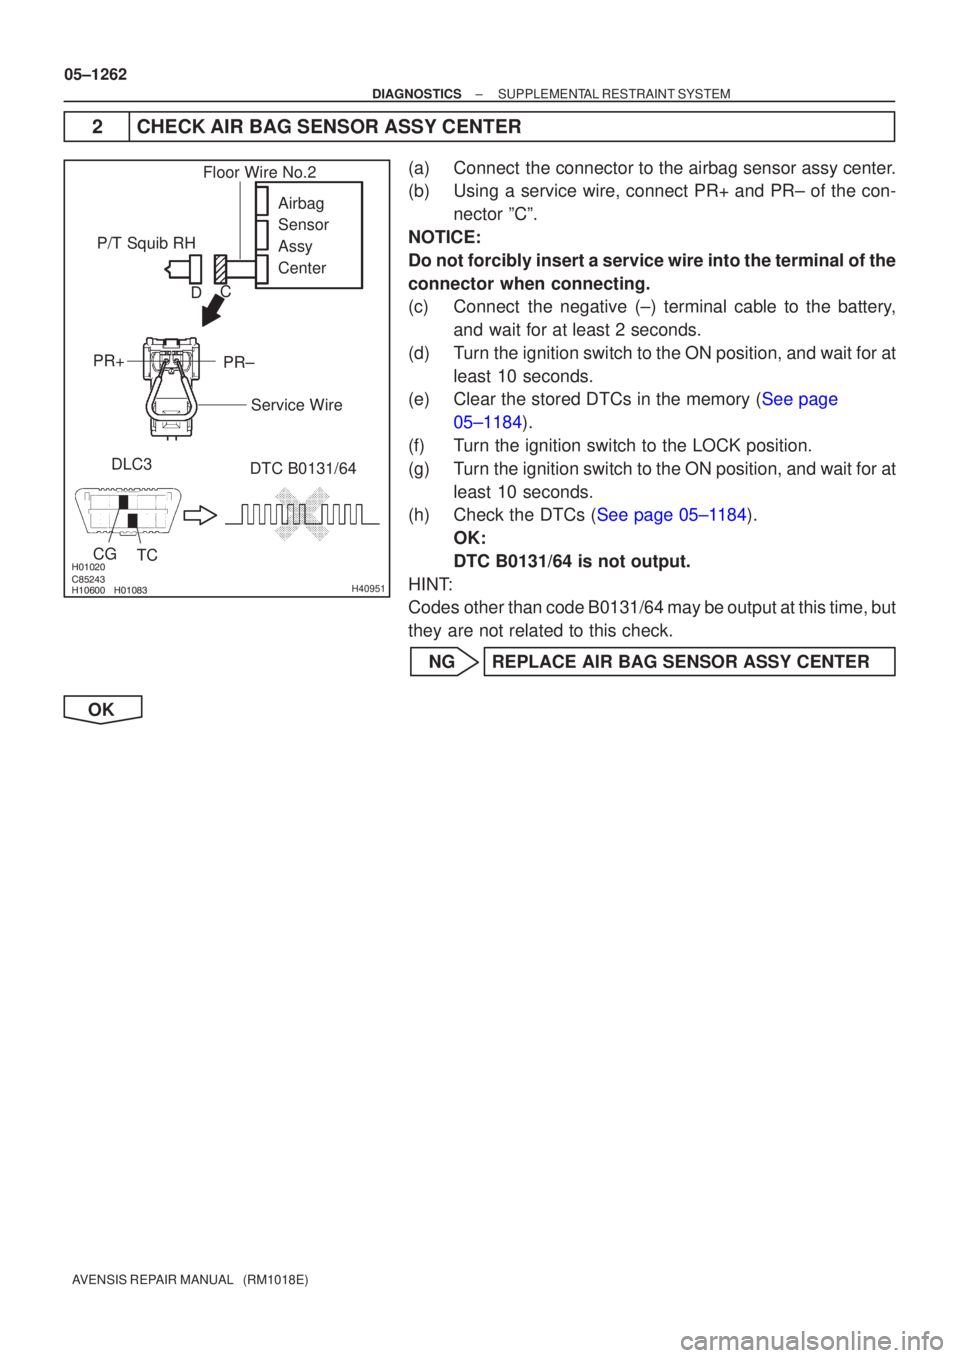 TOYOTA AVENSIS 2005  Service Repair Manual 

	\b

 
\b
H40951
P/T Squib RHDLC3
CG TC DTC B0131/64
Airbag
Sensor
Assy
Center
PR±
PR+
Floor Wire No.2
Service Wire
C
D
05±1262
±
DIAGNOSTICS SUPPLEMENTAL RESTRAINT SYSTEM
AVENS